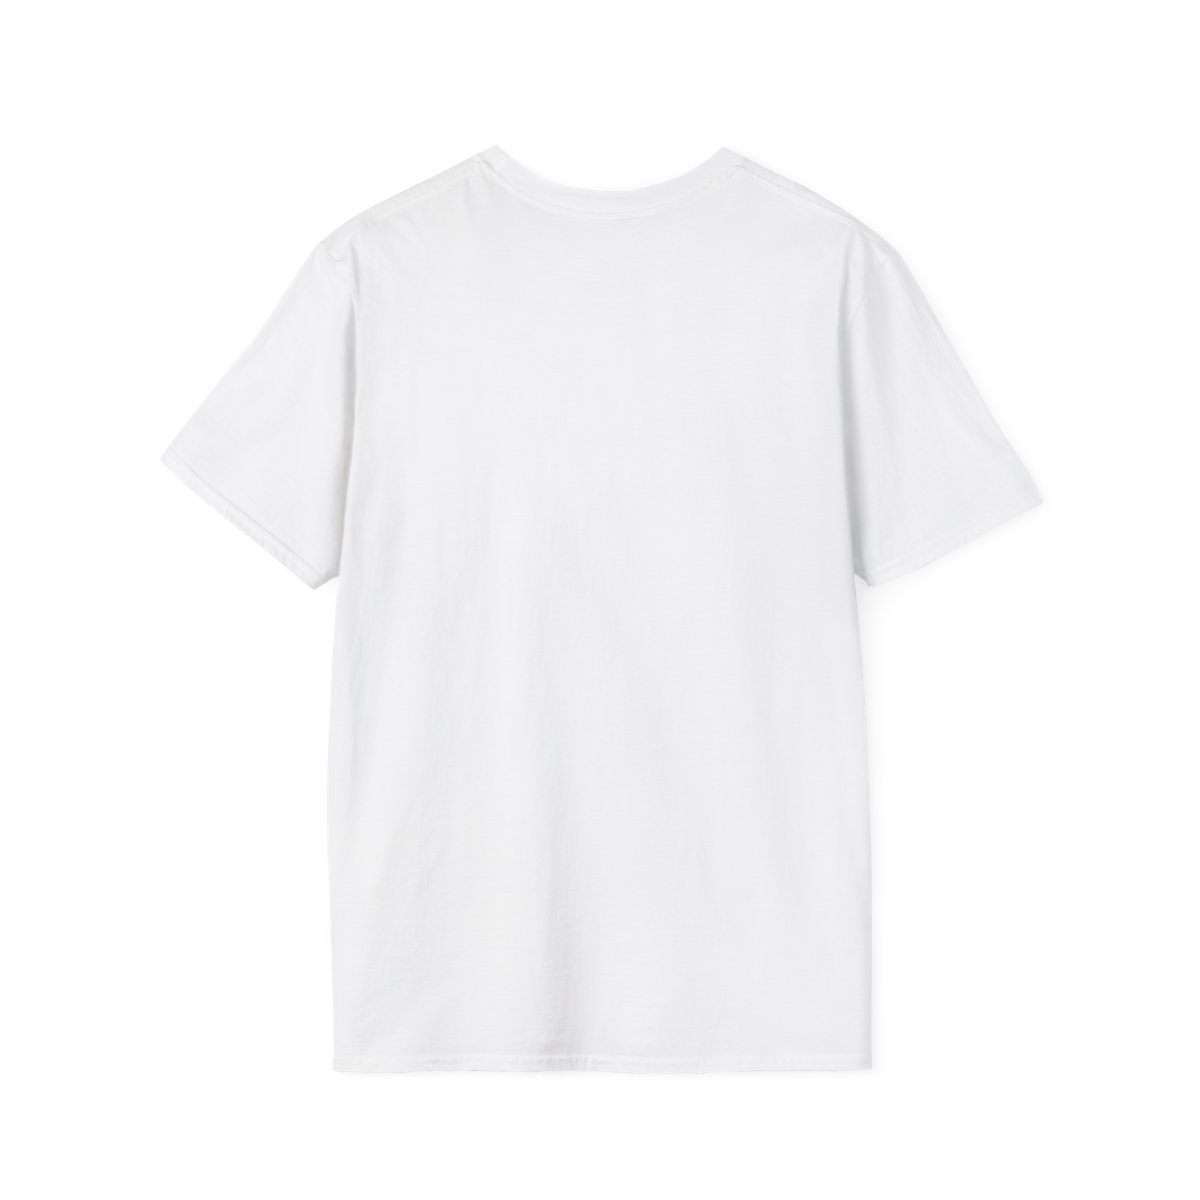 Adult PhxSoul.com Unisex Softstyle White T-Shirt product thumbnail image